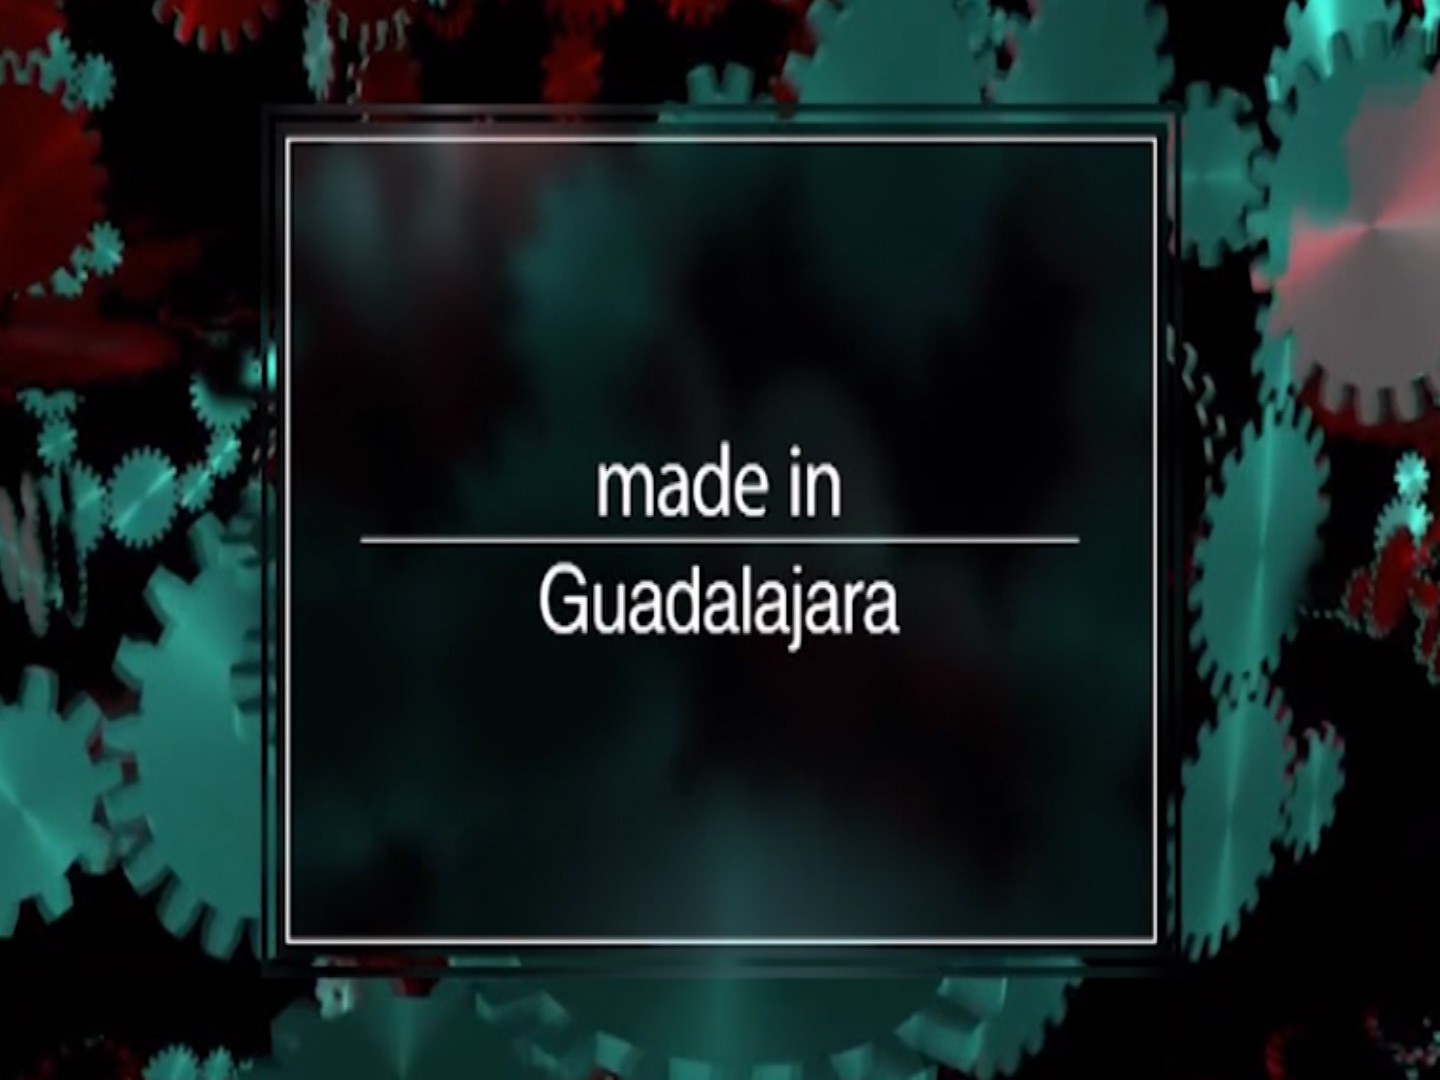 Made in GUadalajara